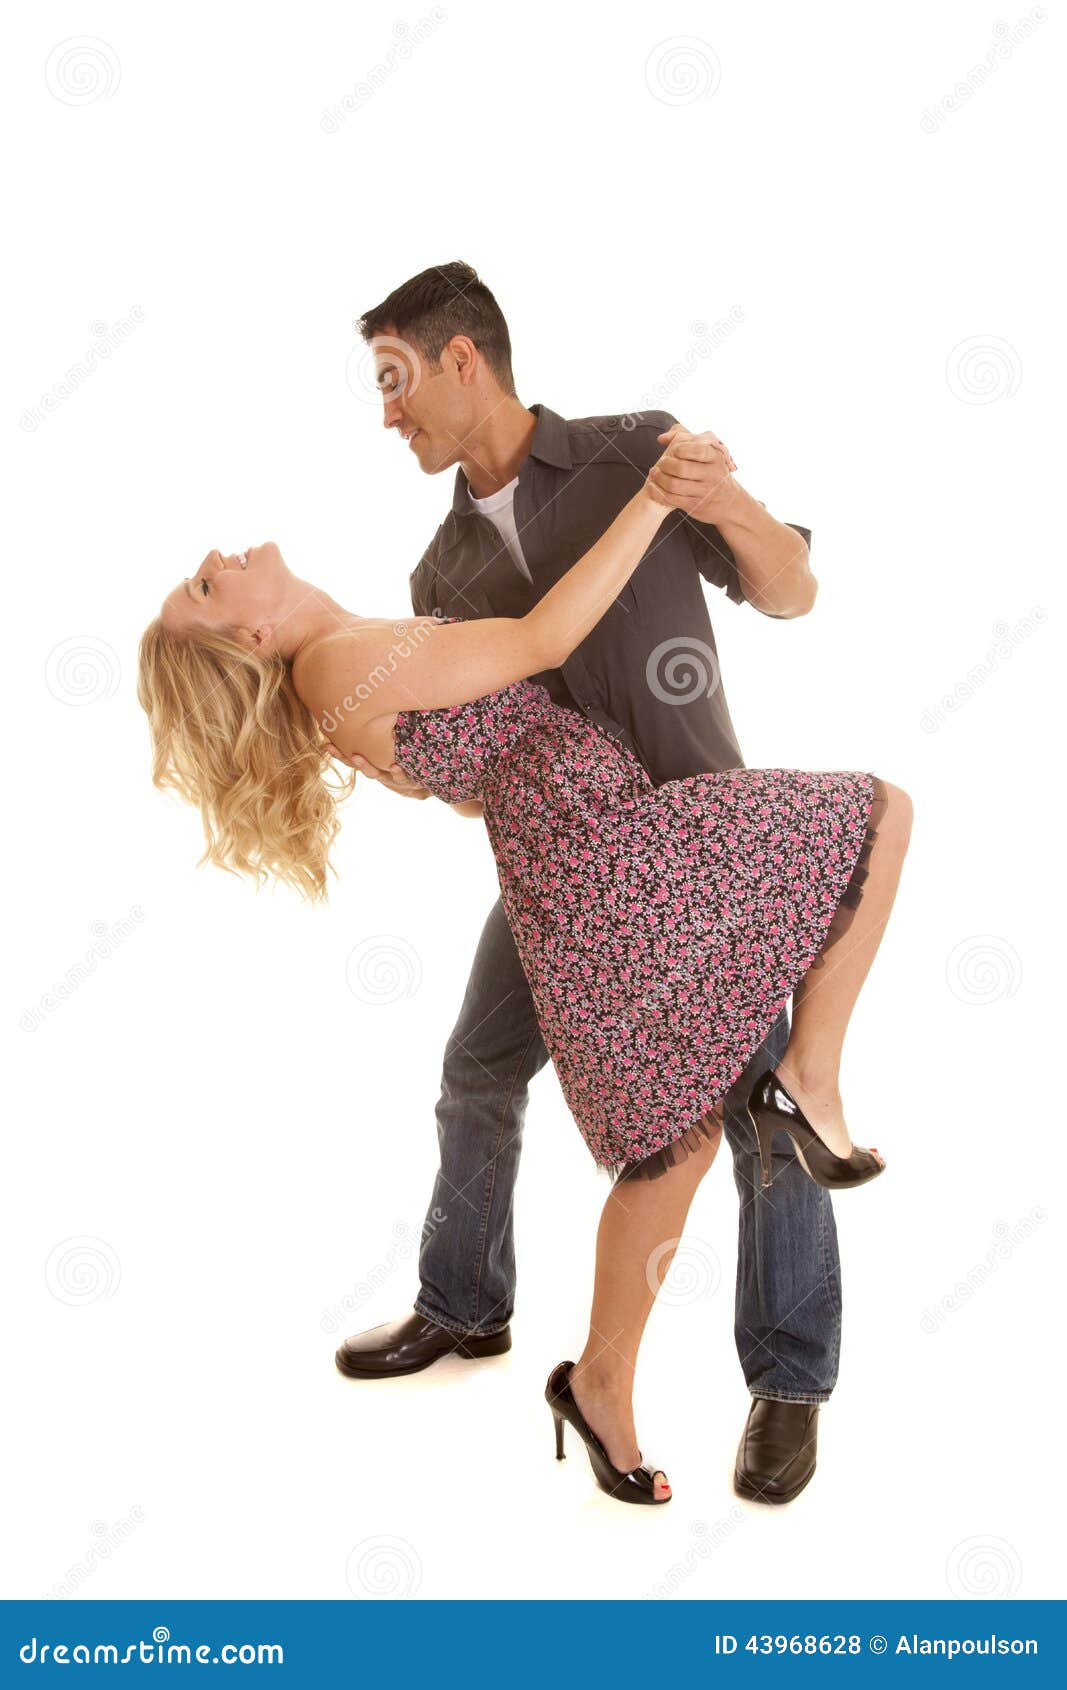 Танец мужа и жены. Парень наклонил девушку. Мужчина в танце наклоняет женщину женщину. Парень наклоняет девушку в танце. Мужчина наклоняет женщину.